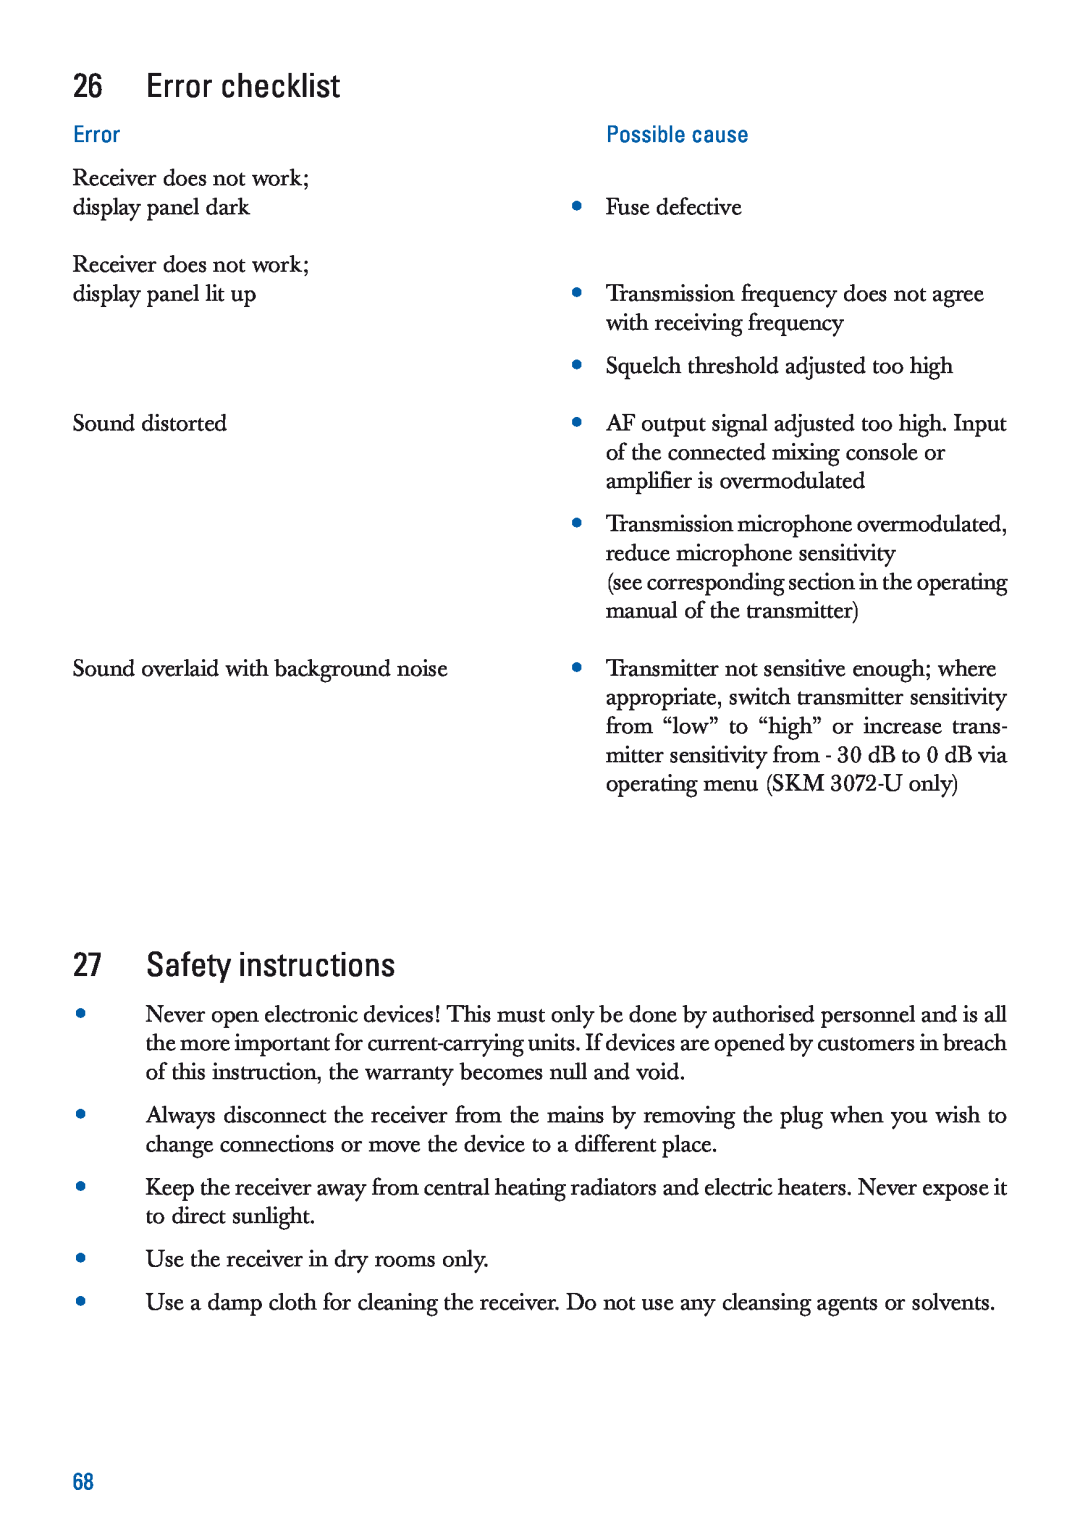 Sennheiser EM 3532-U manual Error checklist, Safety instructions, Possible cause 